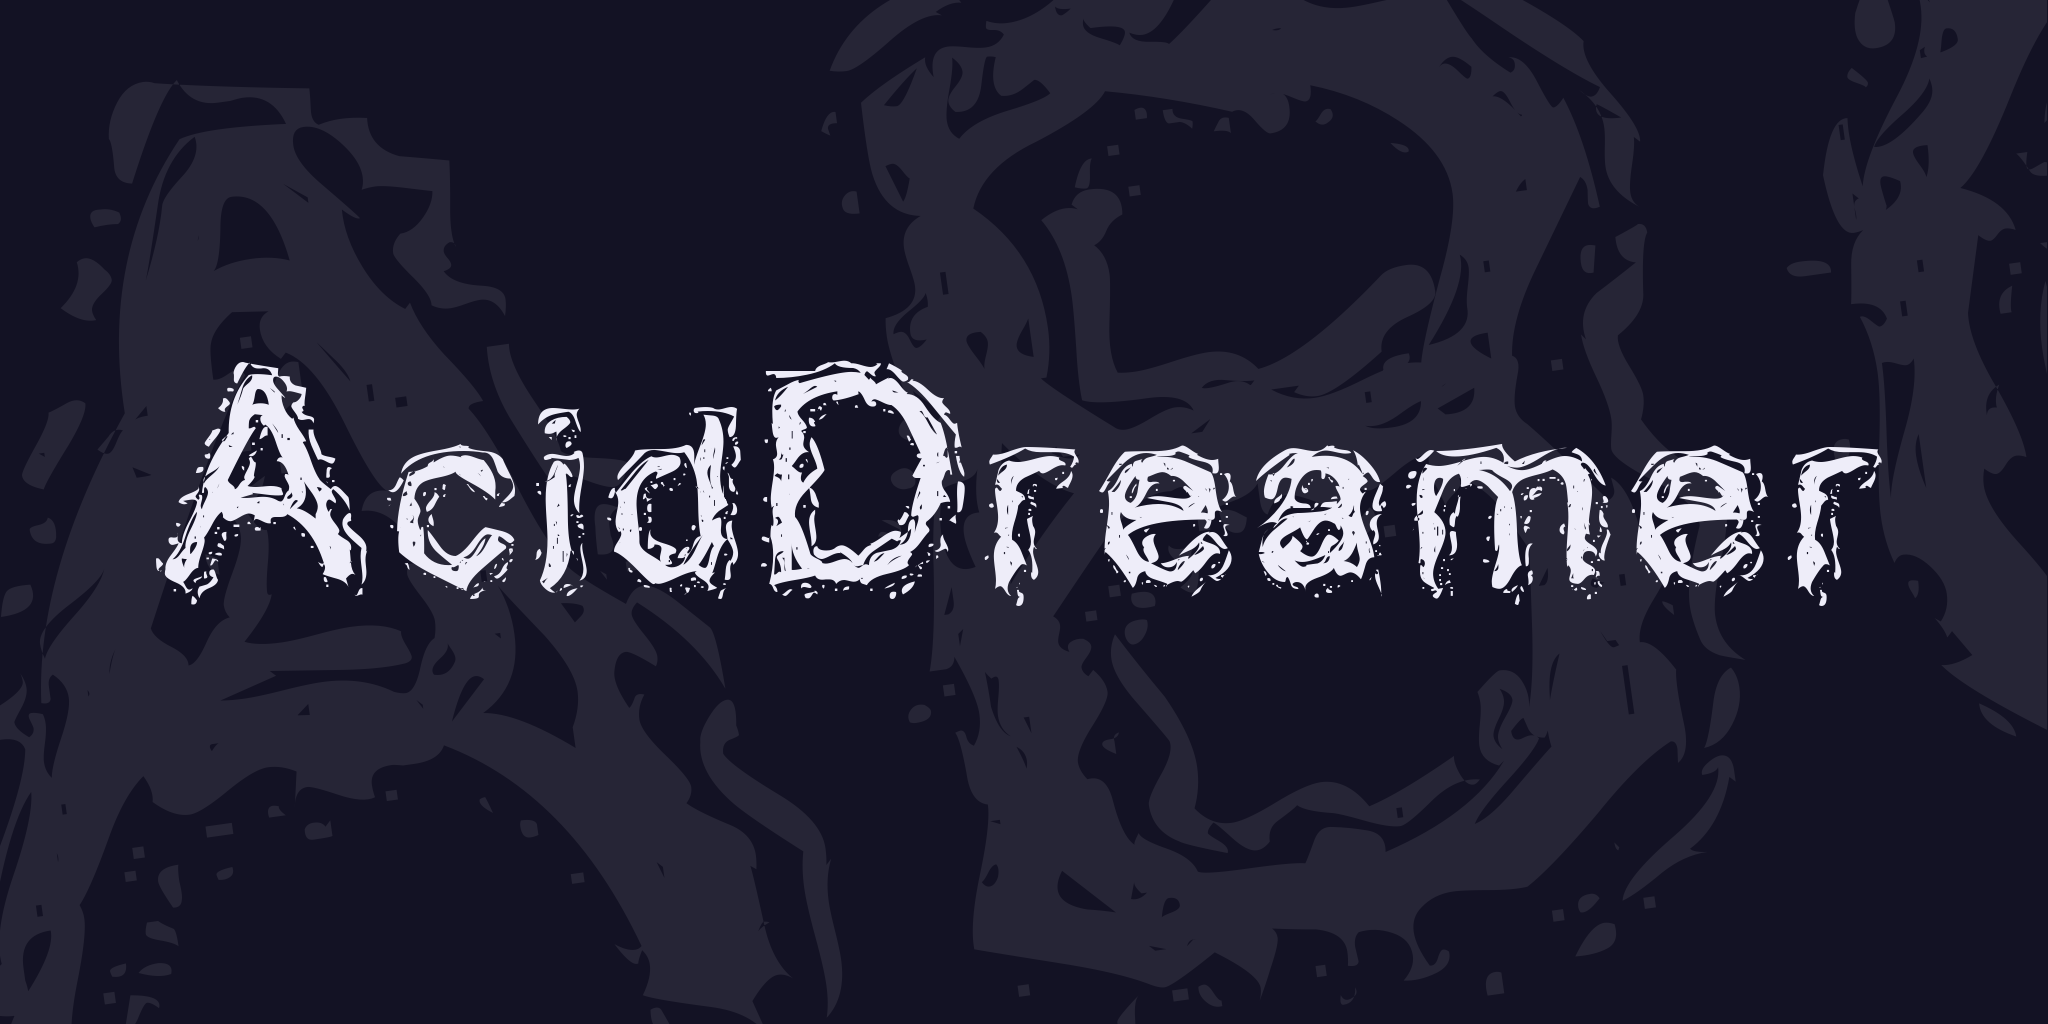 Acid Dreamer